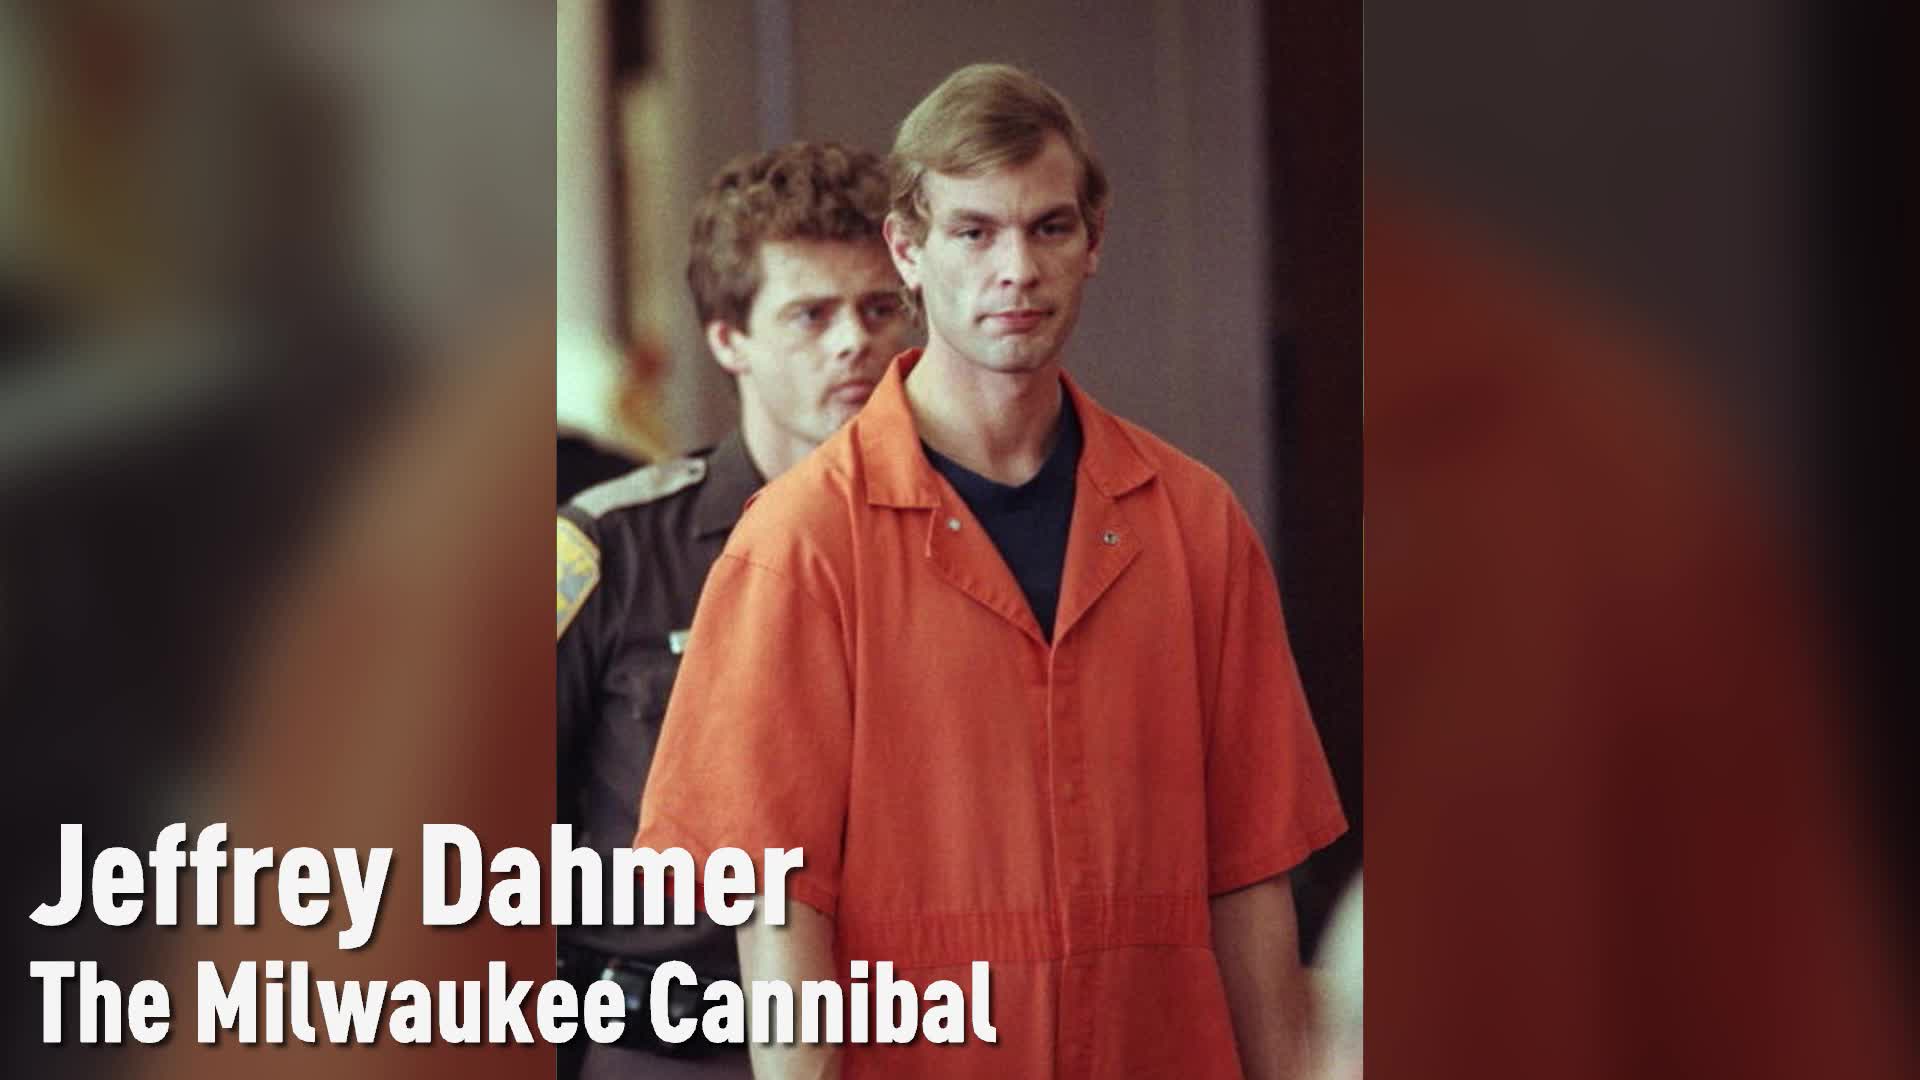 1920px x 1080px - The Jeffrey Dahmer Case, Explained